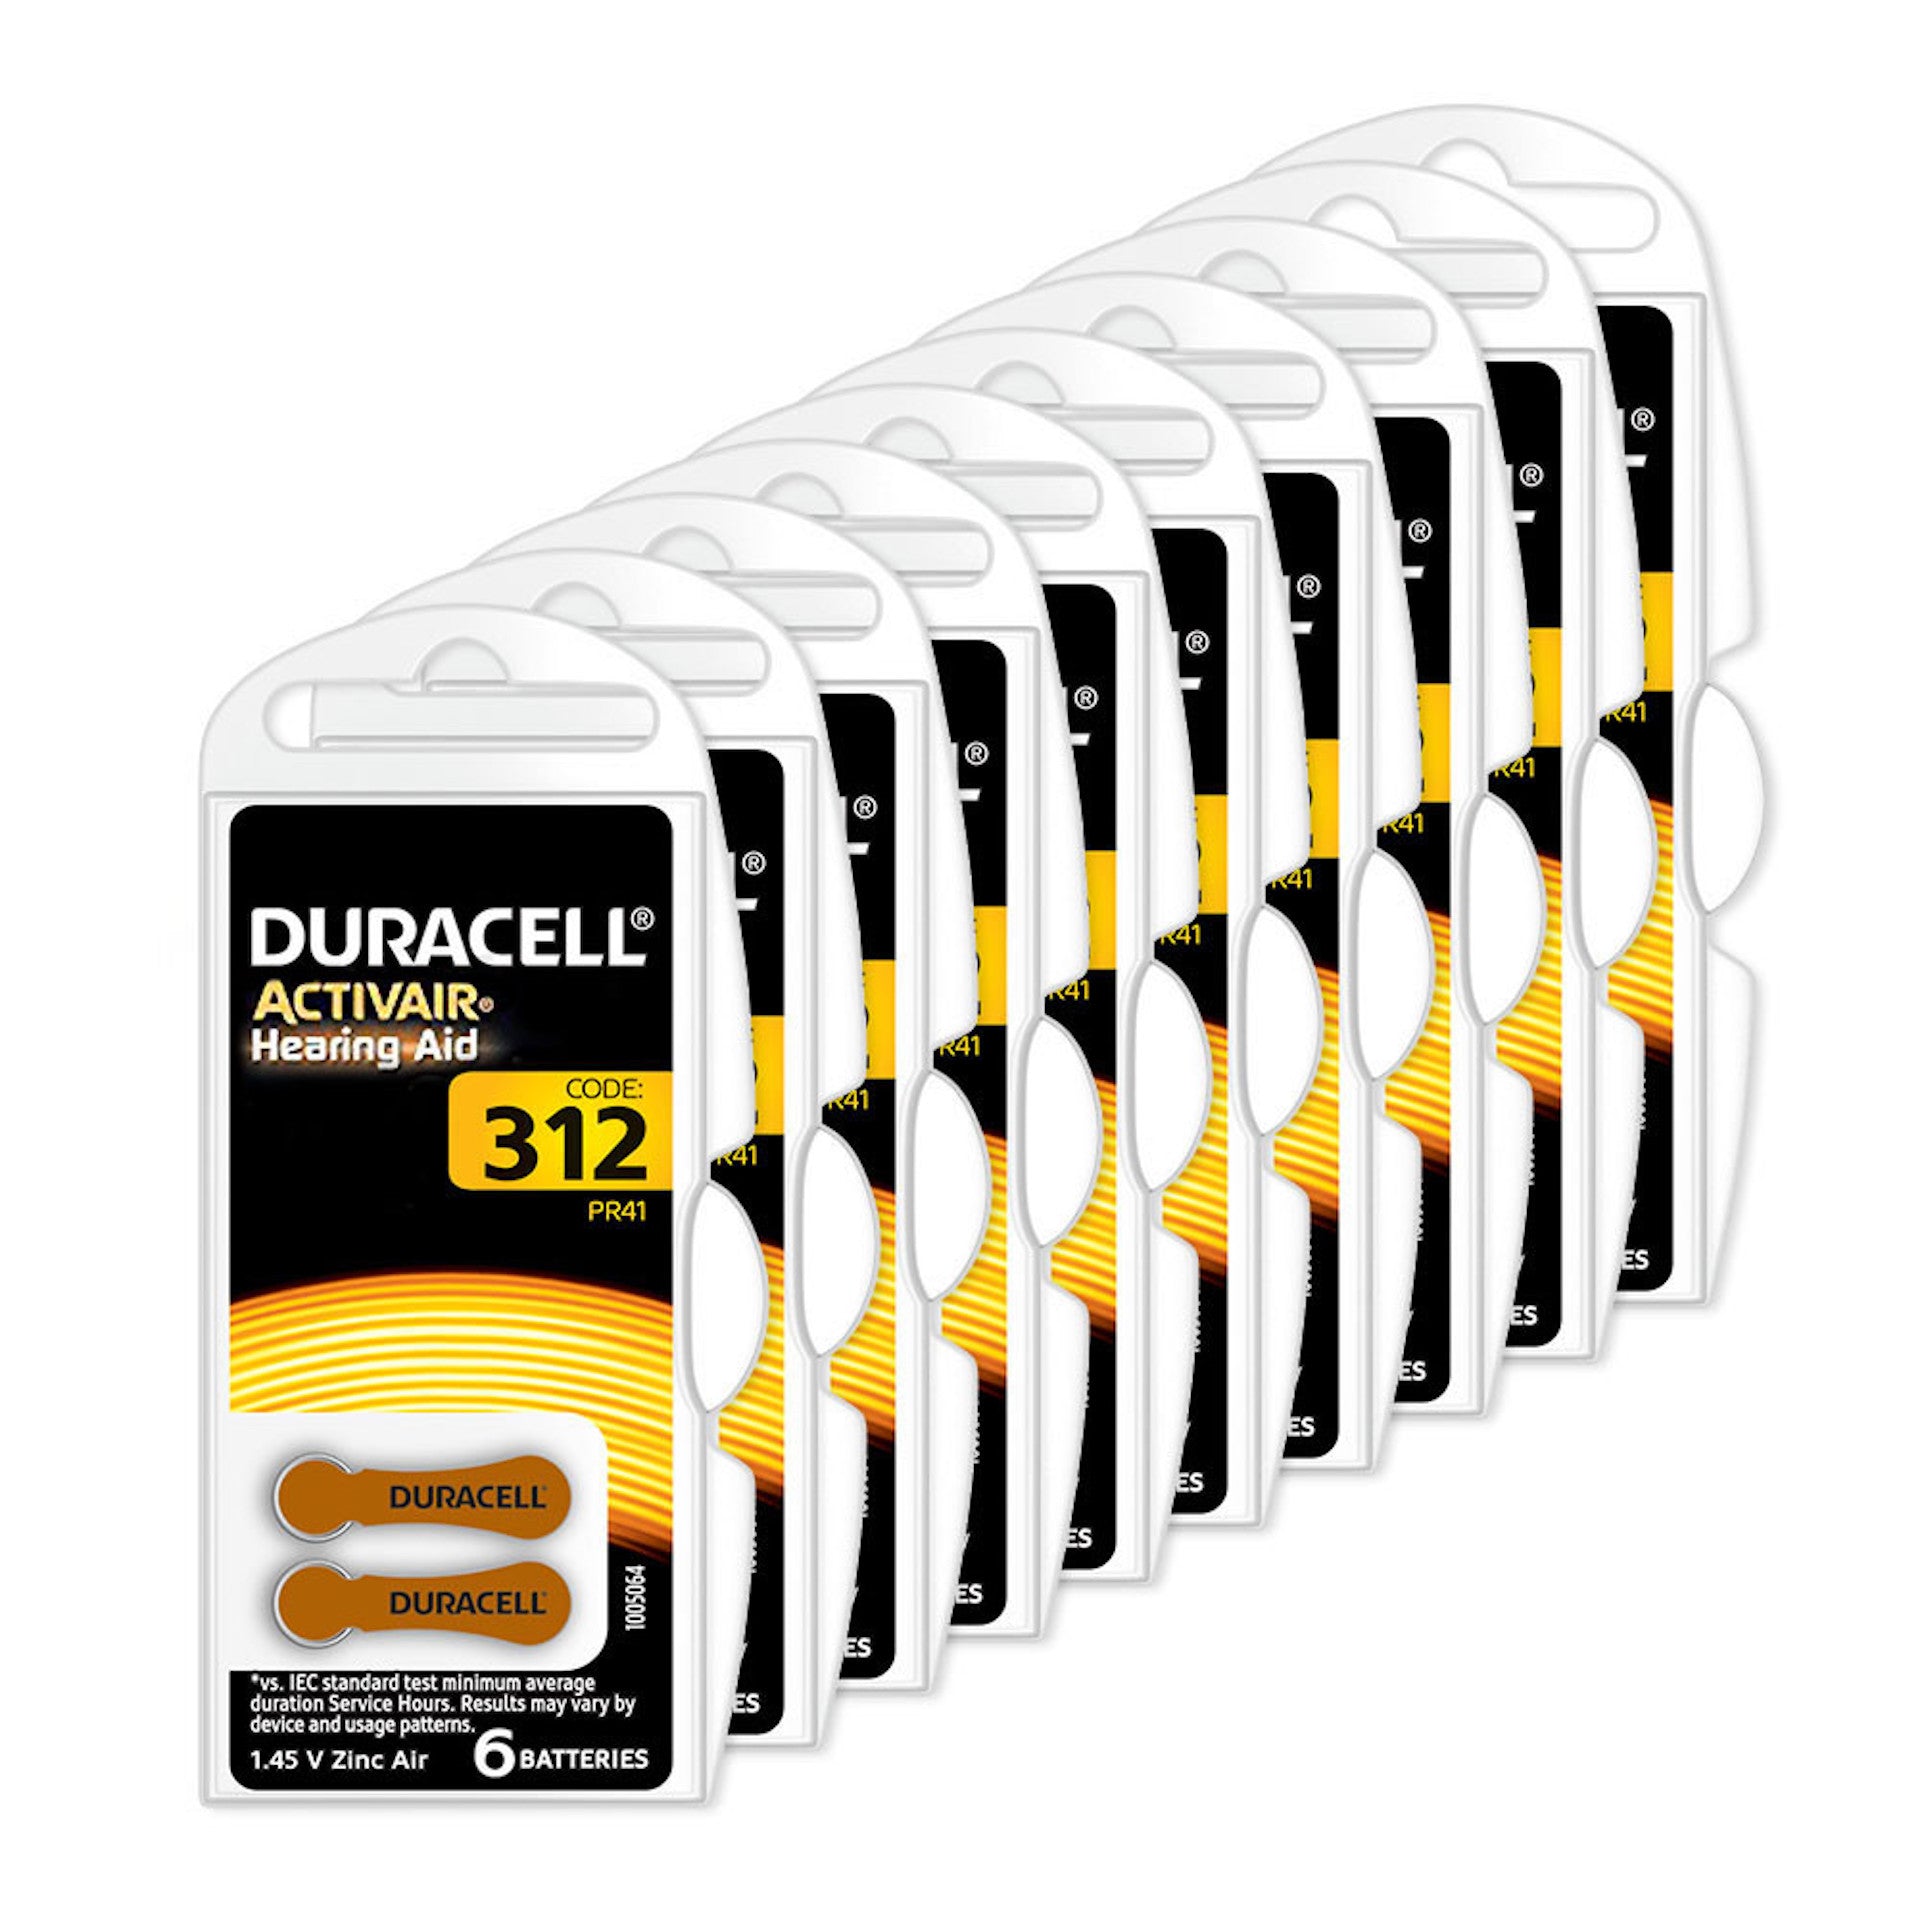 Duracell Batterien überzeugen durch langjährige Erfahrung und modernste Technik des Herstellers mit einer sehr hohe Qualität.